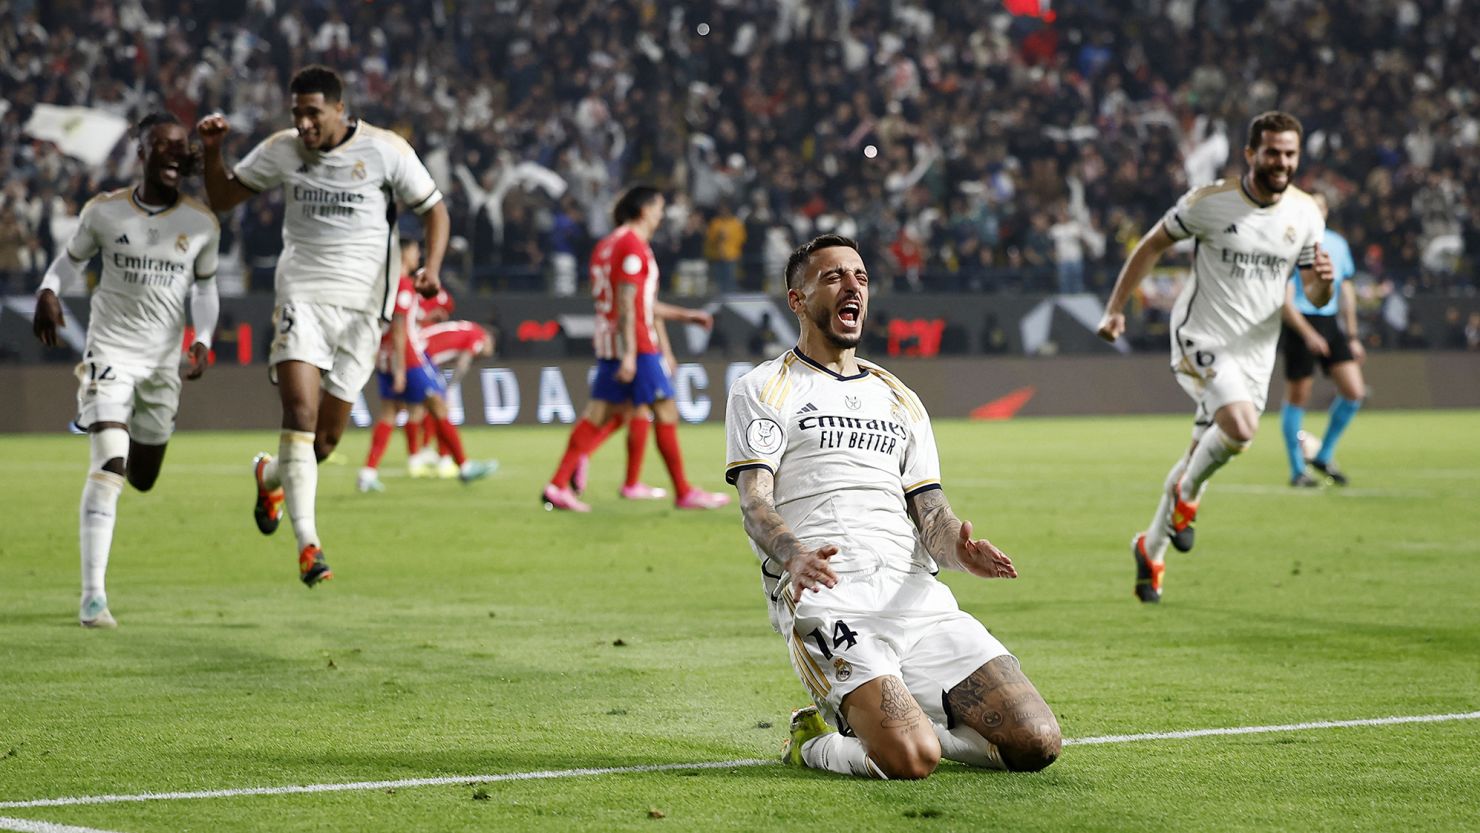 Berita Terbaru! Real Madrid Berhasil Mengalahkan Atletico Madrid 5-3